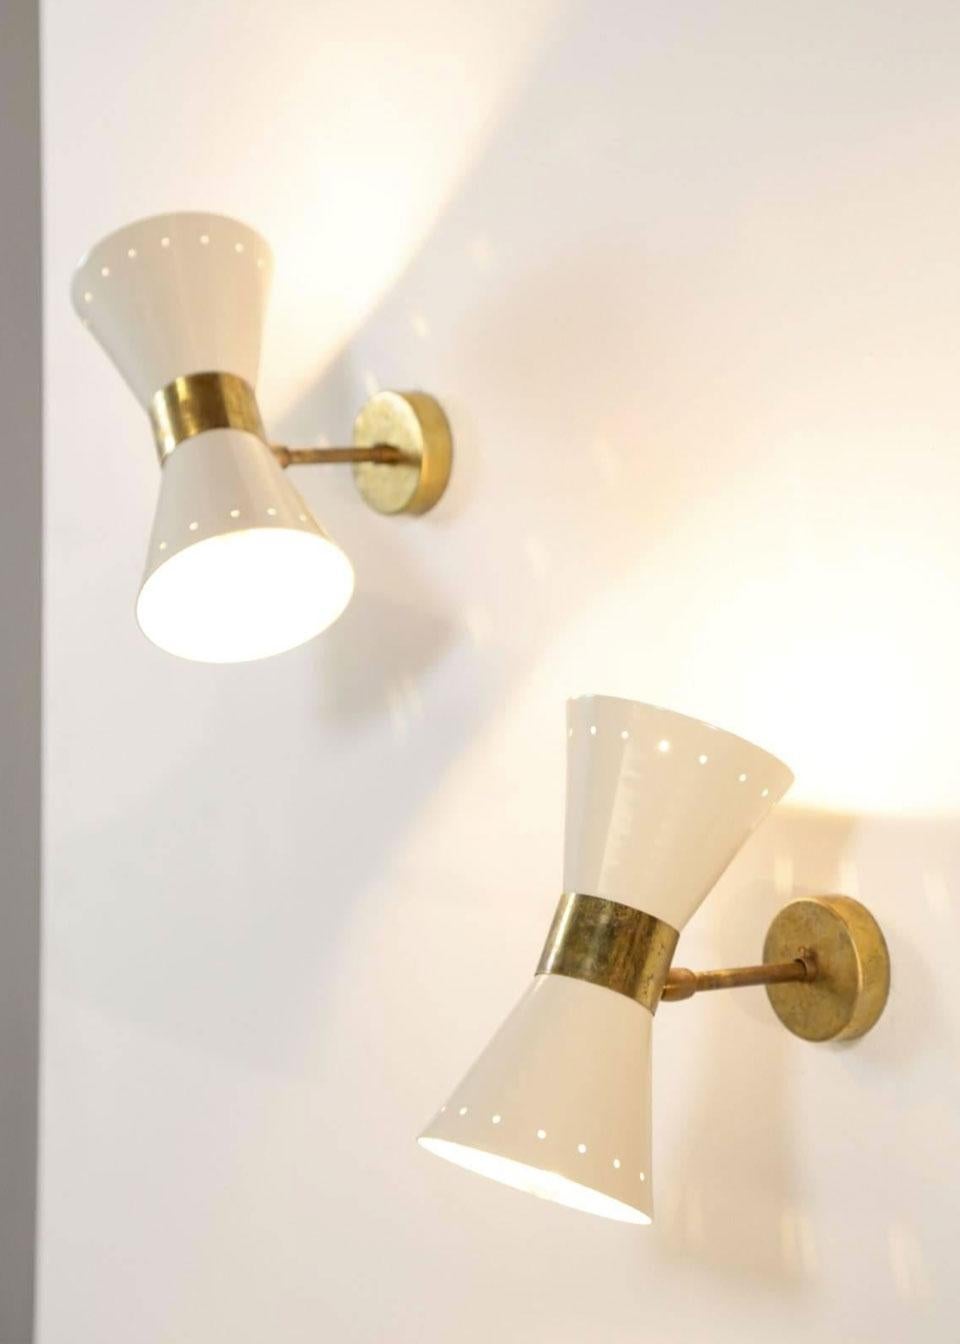 1 of 6 Italian Modern Design Wall Light Sconces Stilnovo Style Ivory White Brass 3